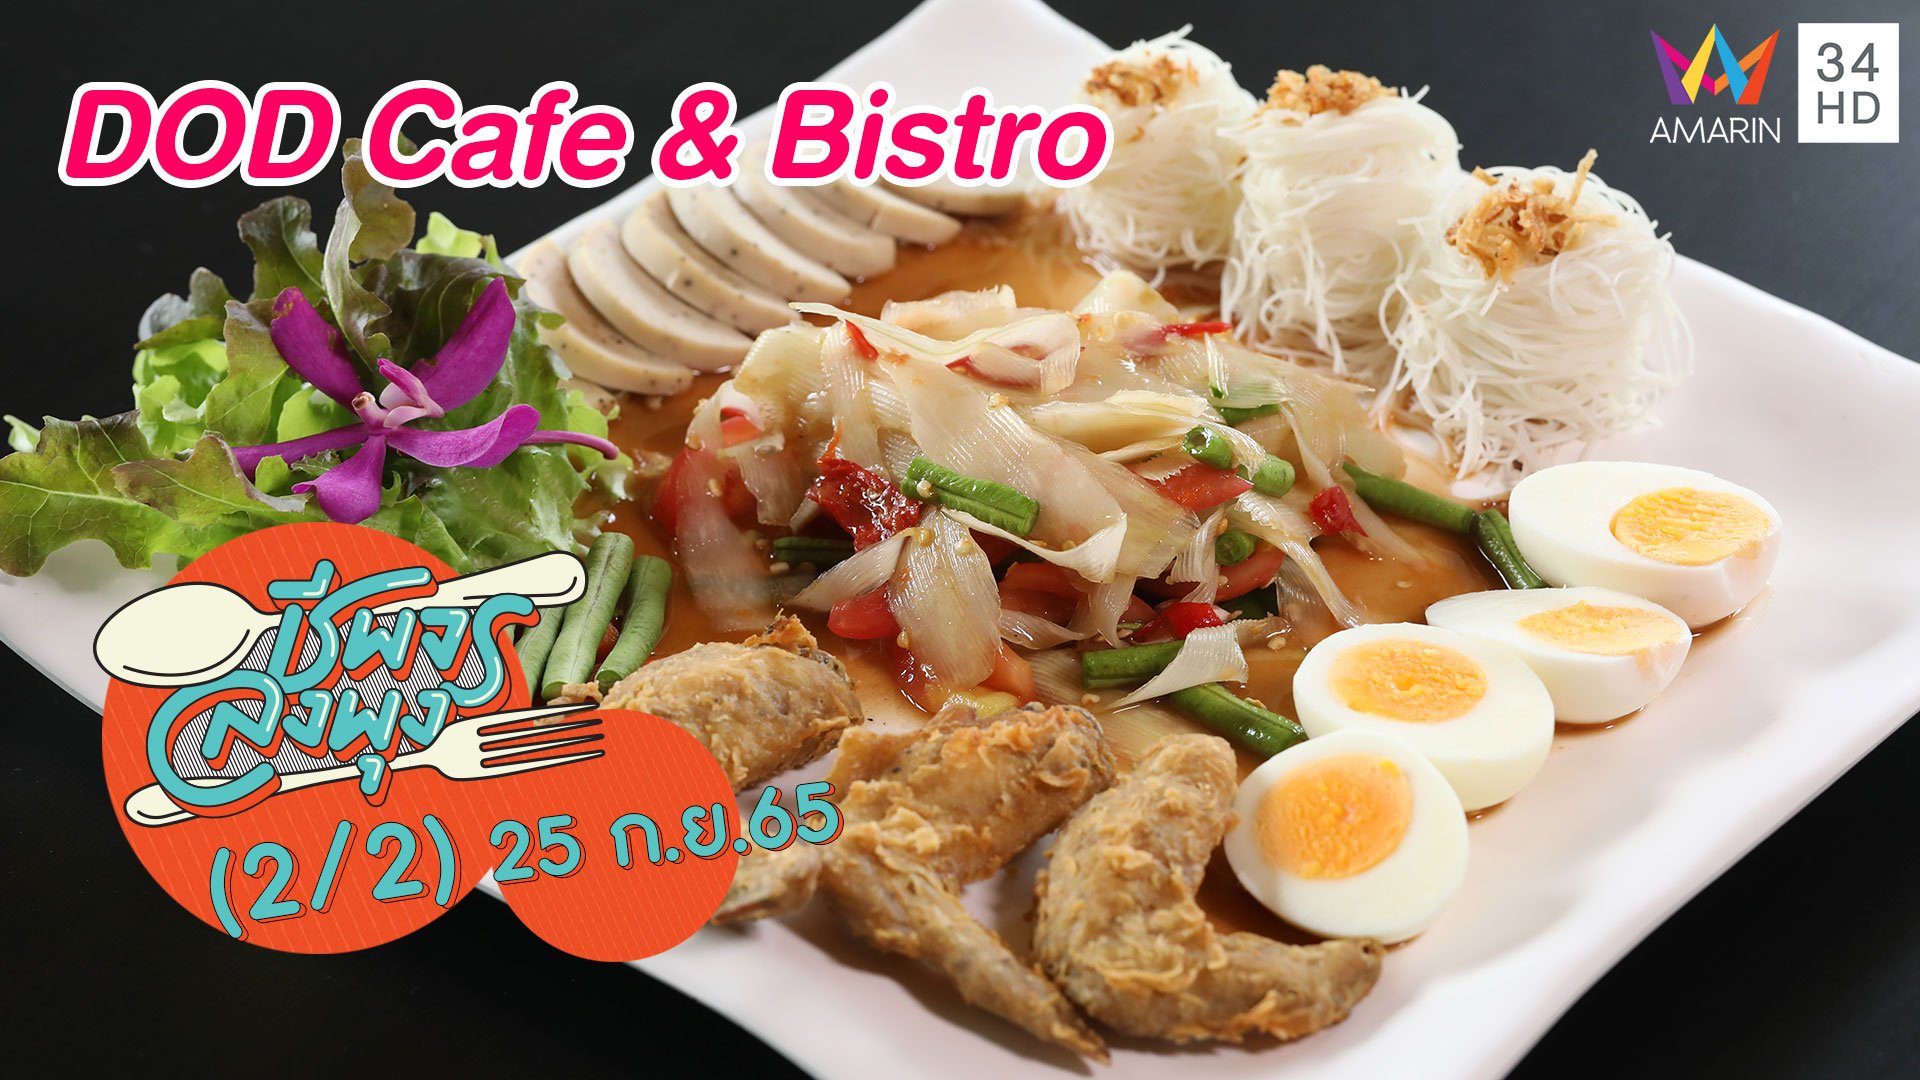 อาหารอีสานฟิวชันดีต่อสุขภาพ @ร้าน DOD Cafe & Bistro | ชีพจรลงพุง | 25 ก.ย. 65 (2/2) | AMARIN TVHD34